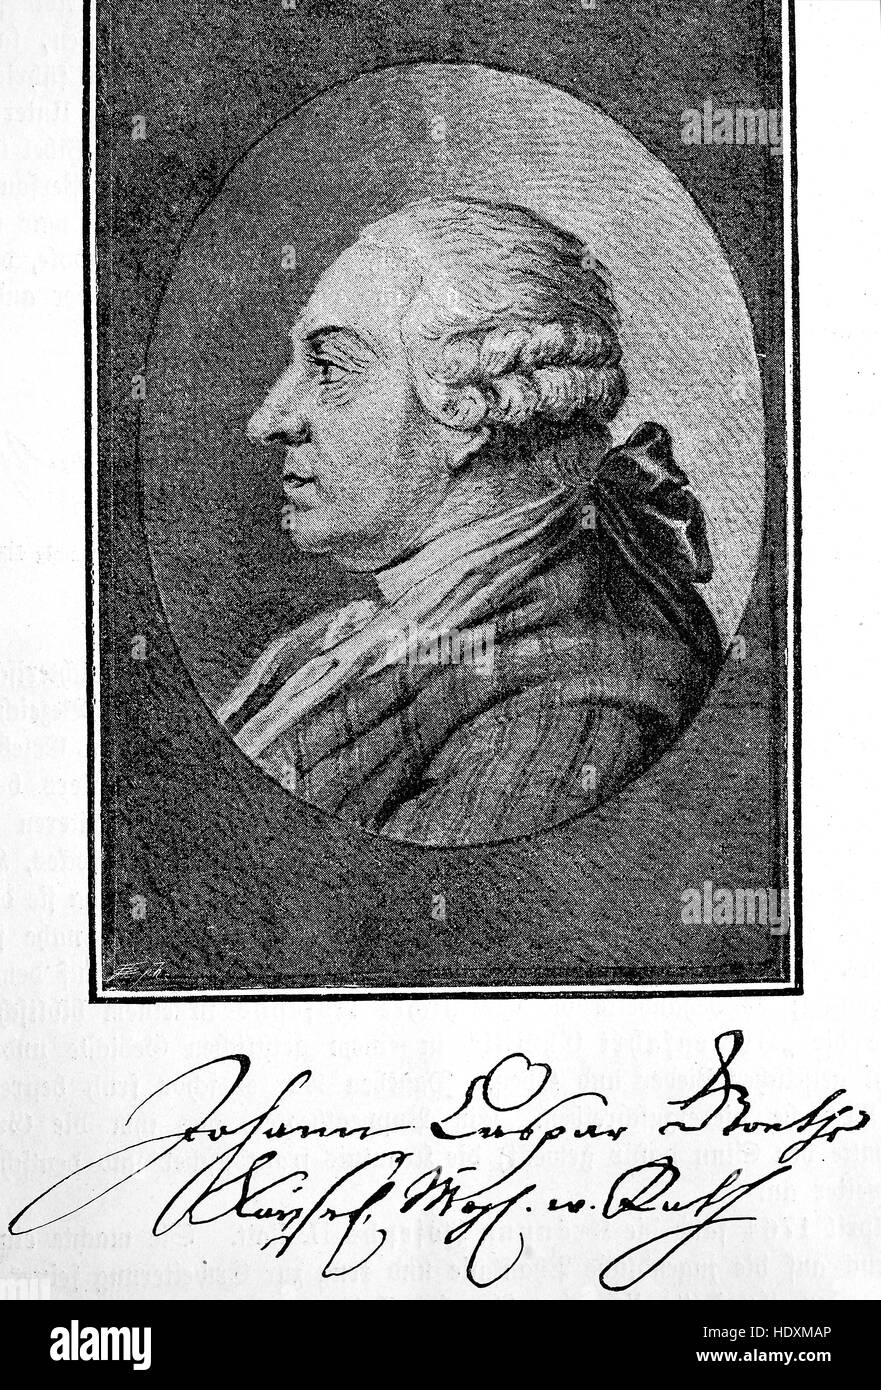 Johann Caspar Goethe, 1710-1782, le père de Johann Wolfgang von Goethe, était un avocat et conseil impérial à Frankfurt am Main, gravure sur bois de l'année 1882, l'amélioration numérique Banque D'Images